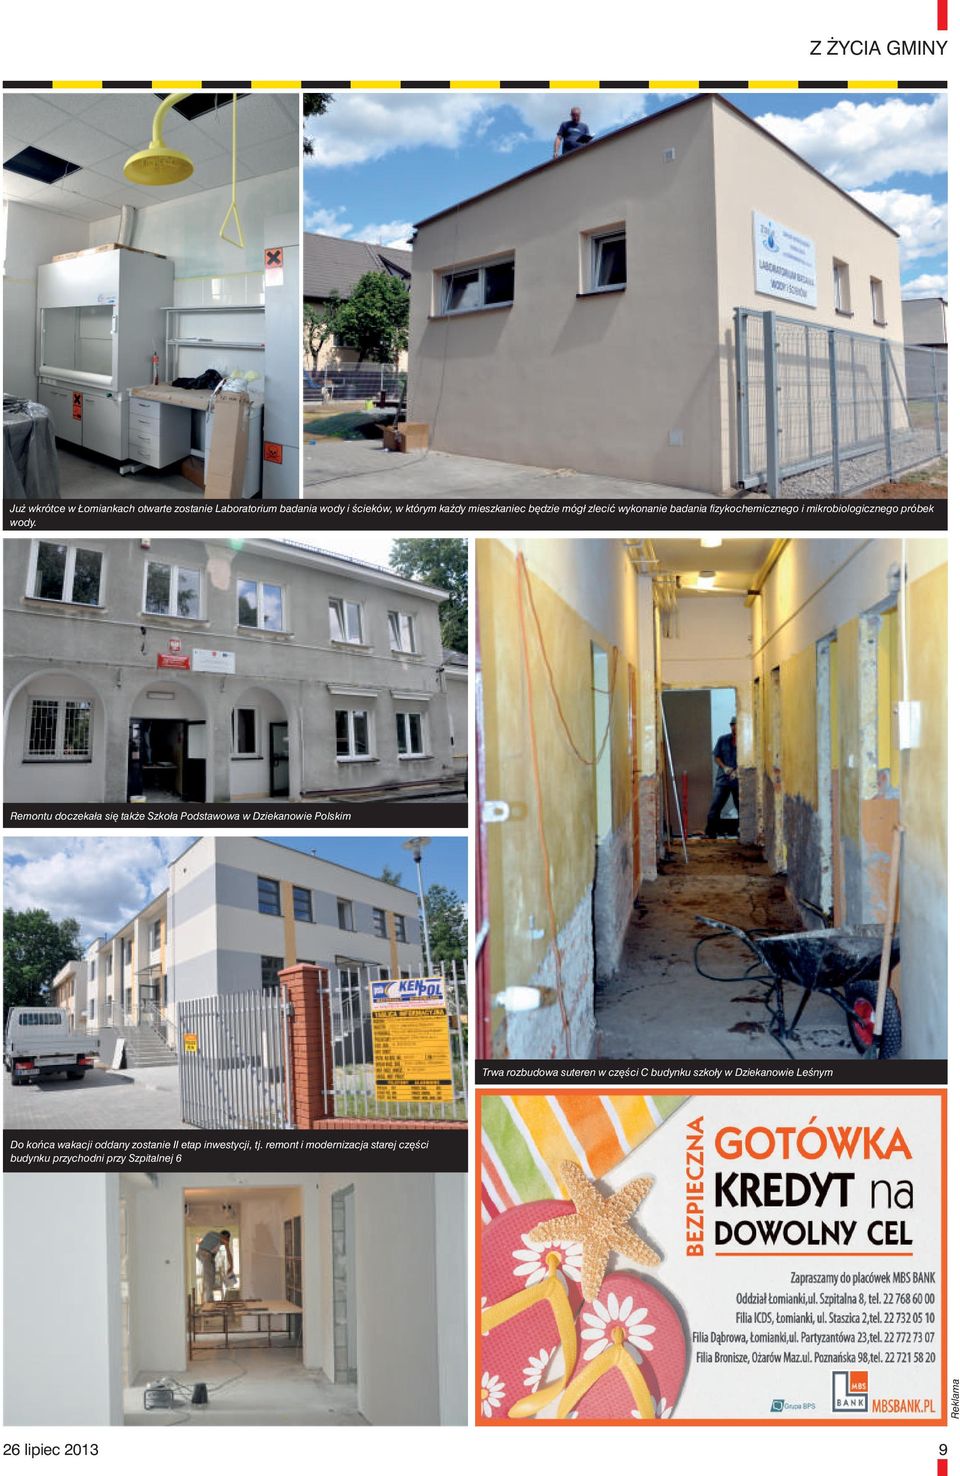 Remontu doczekała się także Szkoła Podstawowa w Dziekanowie Polskim Trwa rozbudowa suteren w części C budynku szkoły w